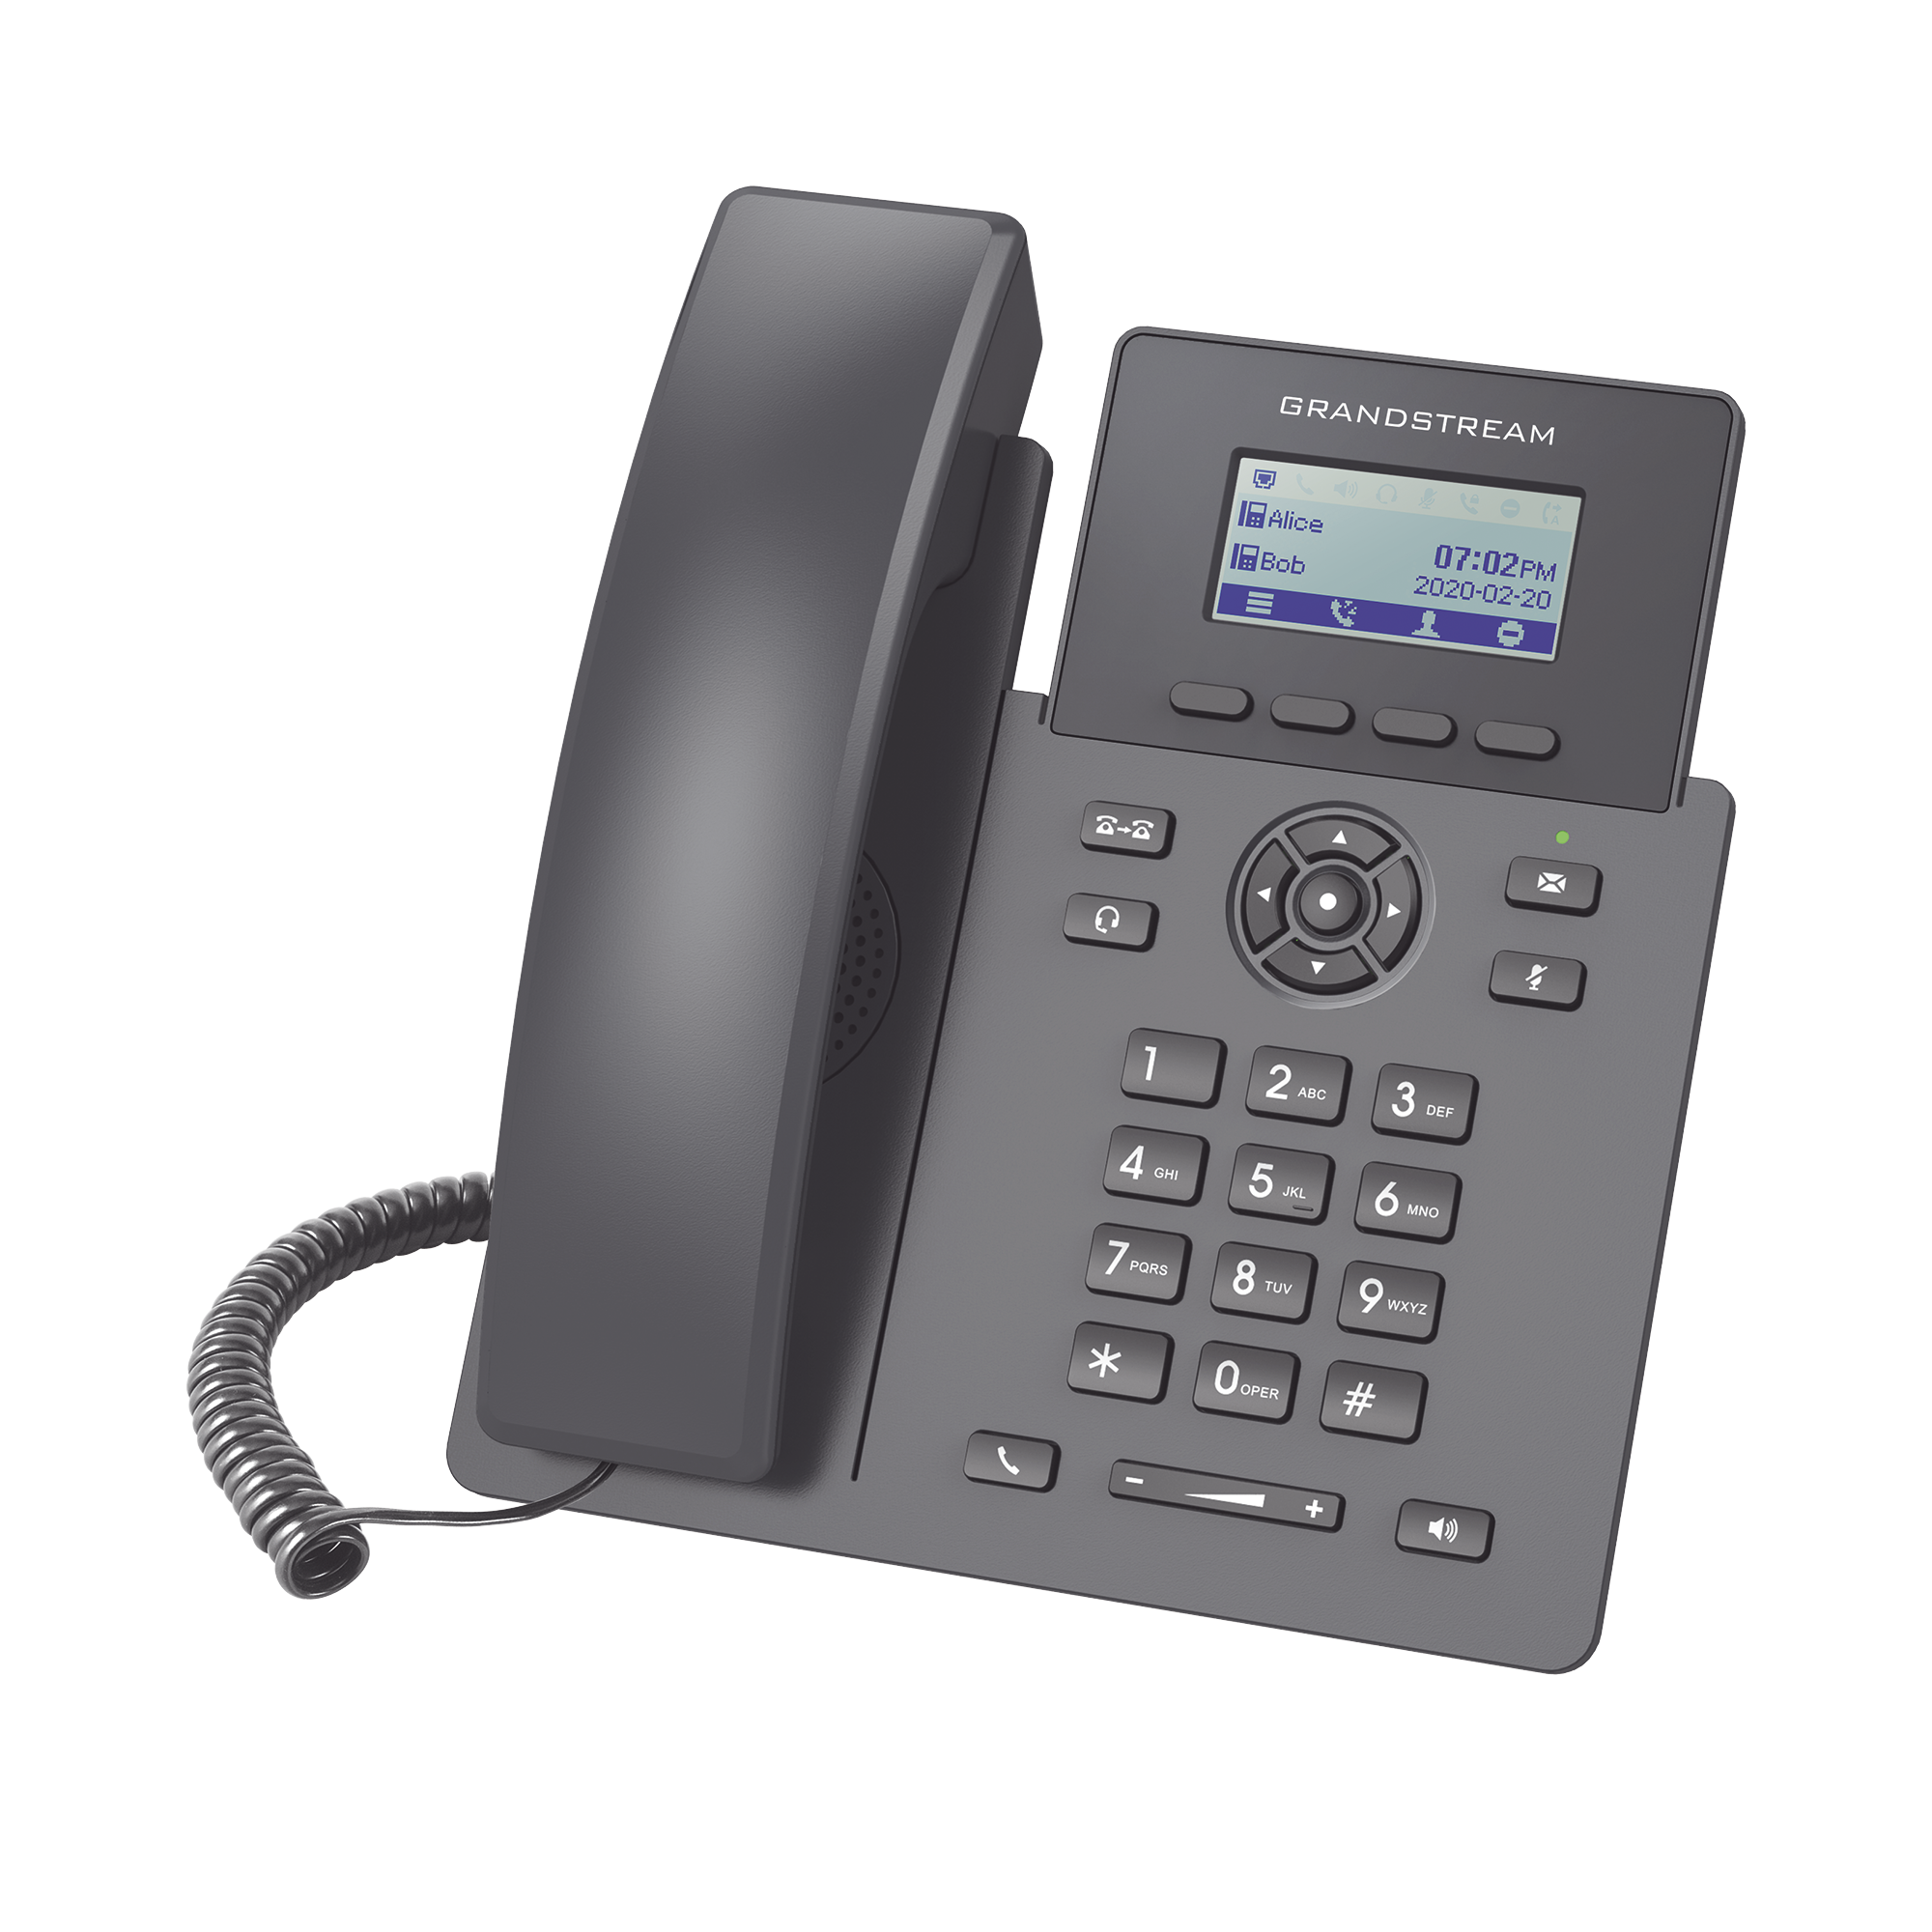 Teléfono IP Grado Operador, 2 líneas SIP con 2 cuentas, codec Opus, IPV4/IPV6 con gestión en la nube GDMS